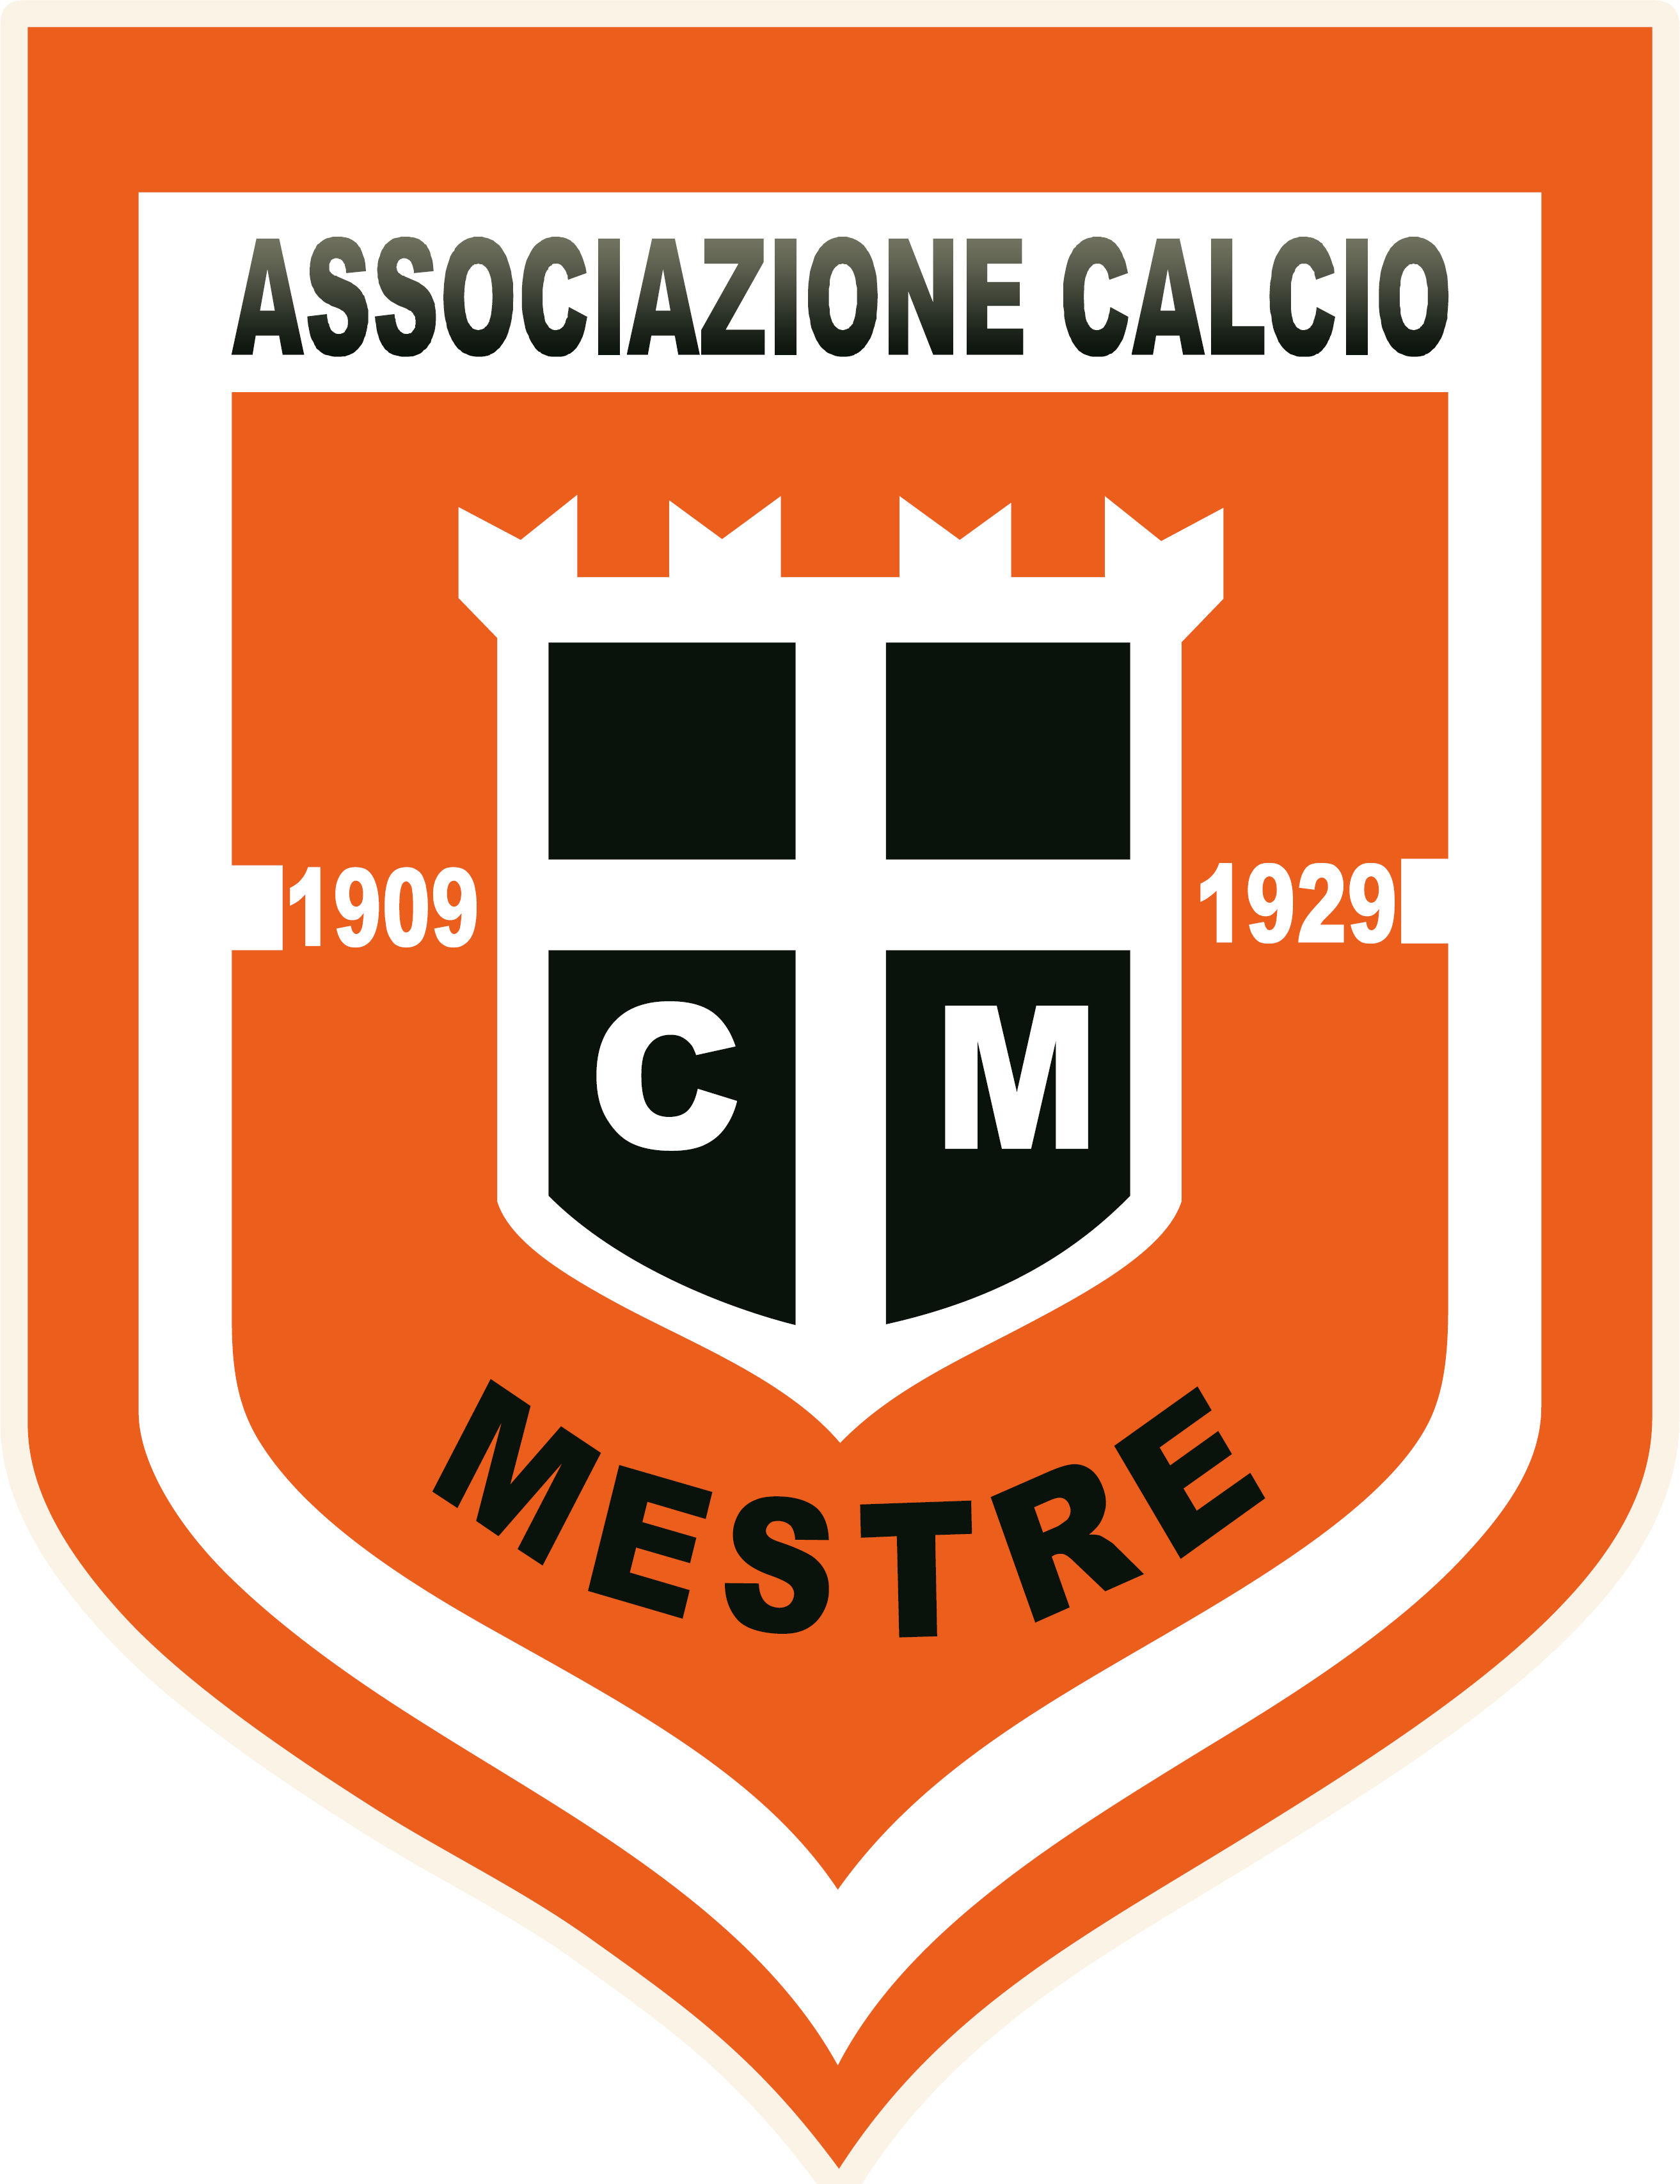 Местре - Logo